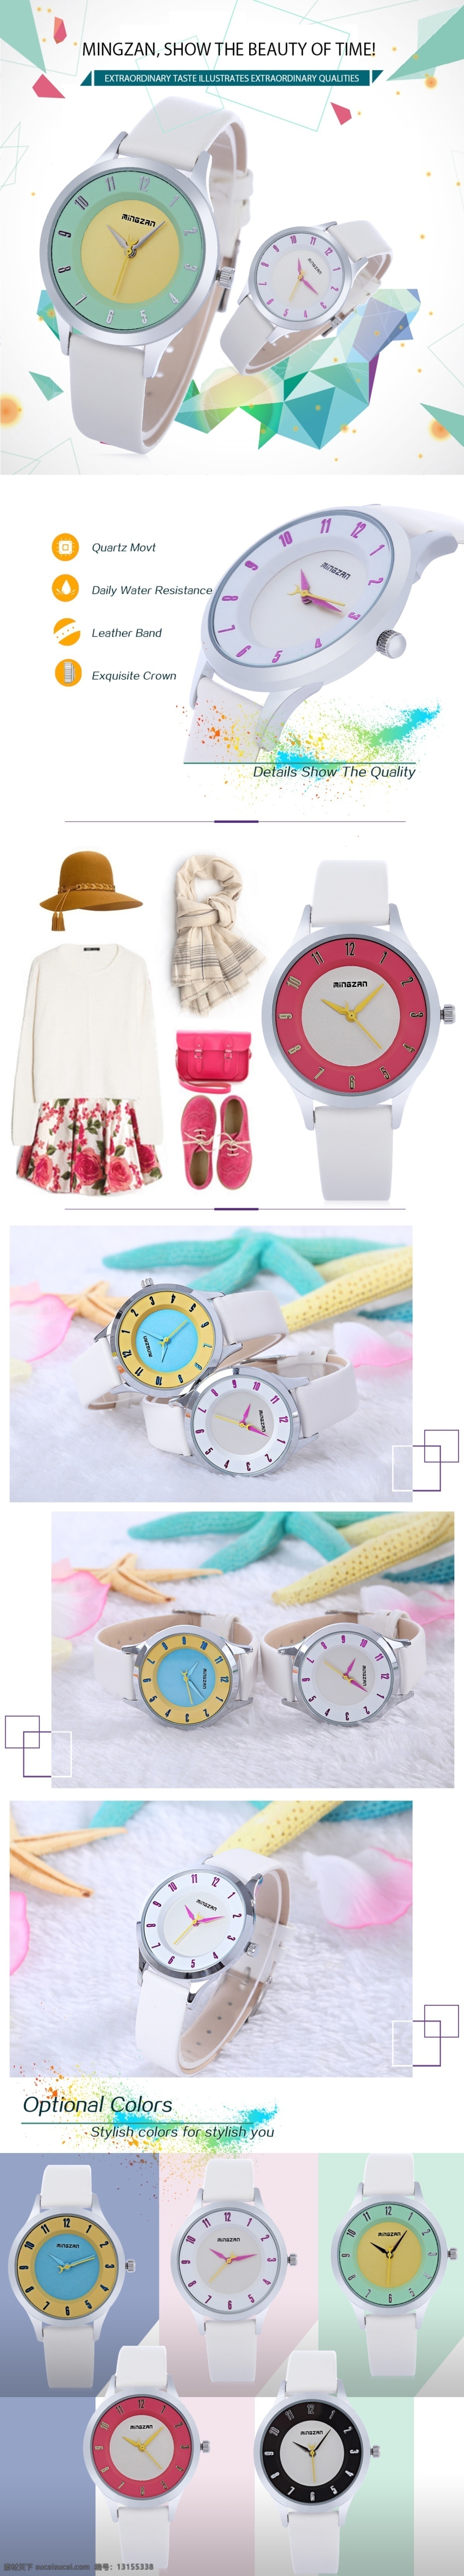 儿童 手表 详情 页 儿童手表 手表海报图 分层 源文件 撞色设计 手表搭配 手表场景图